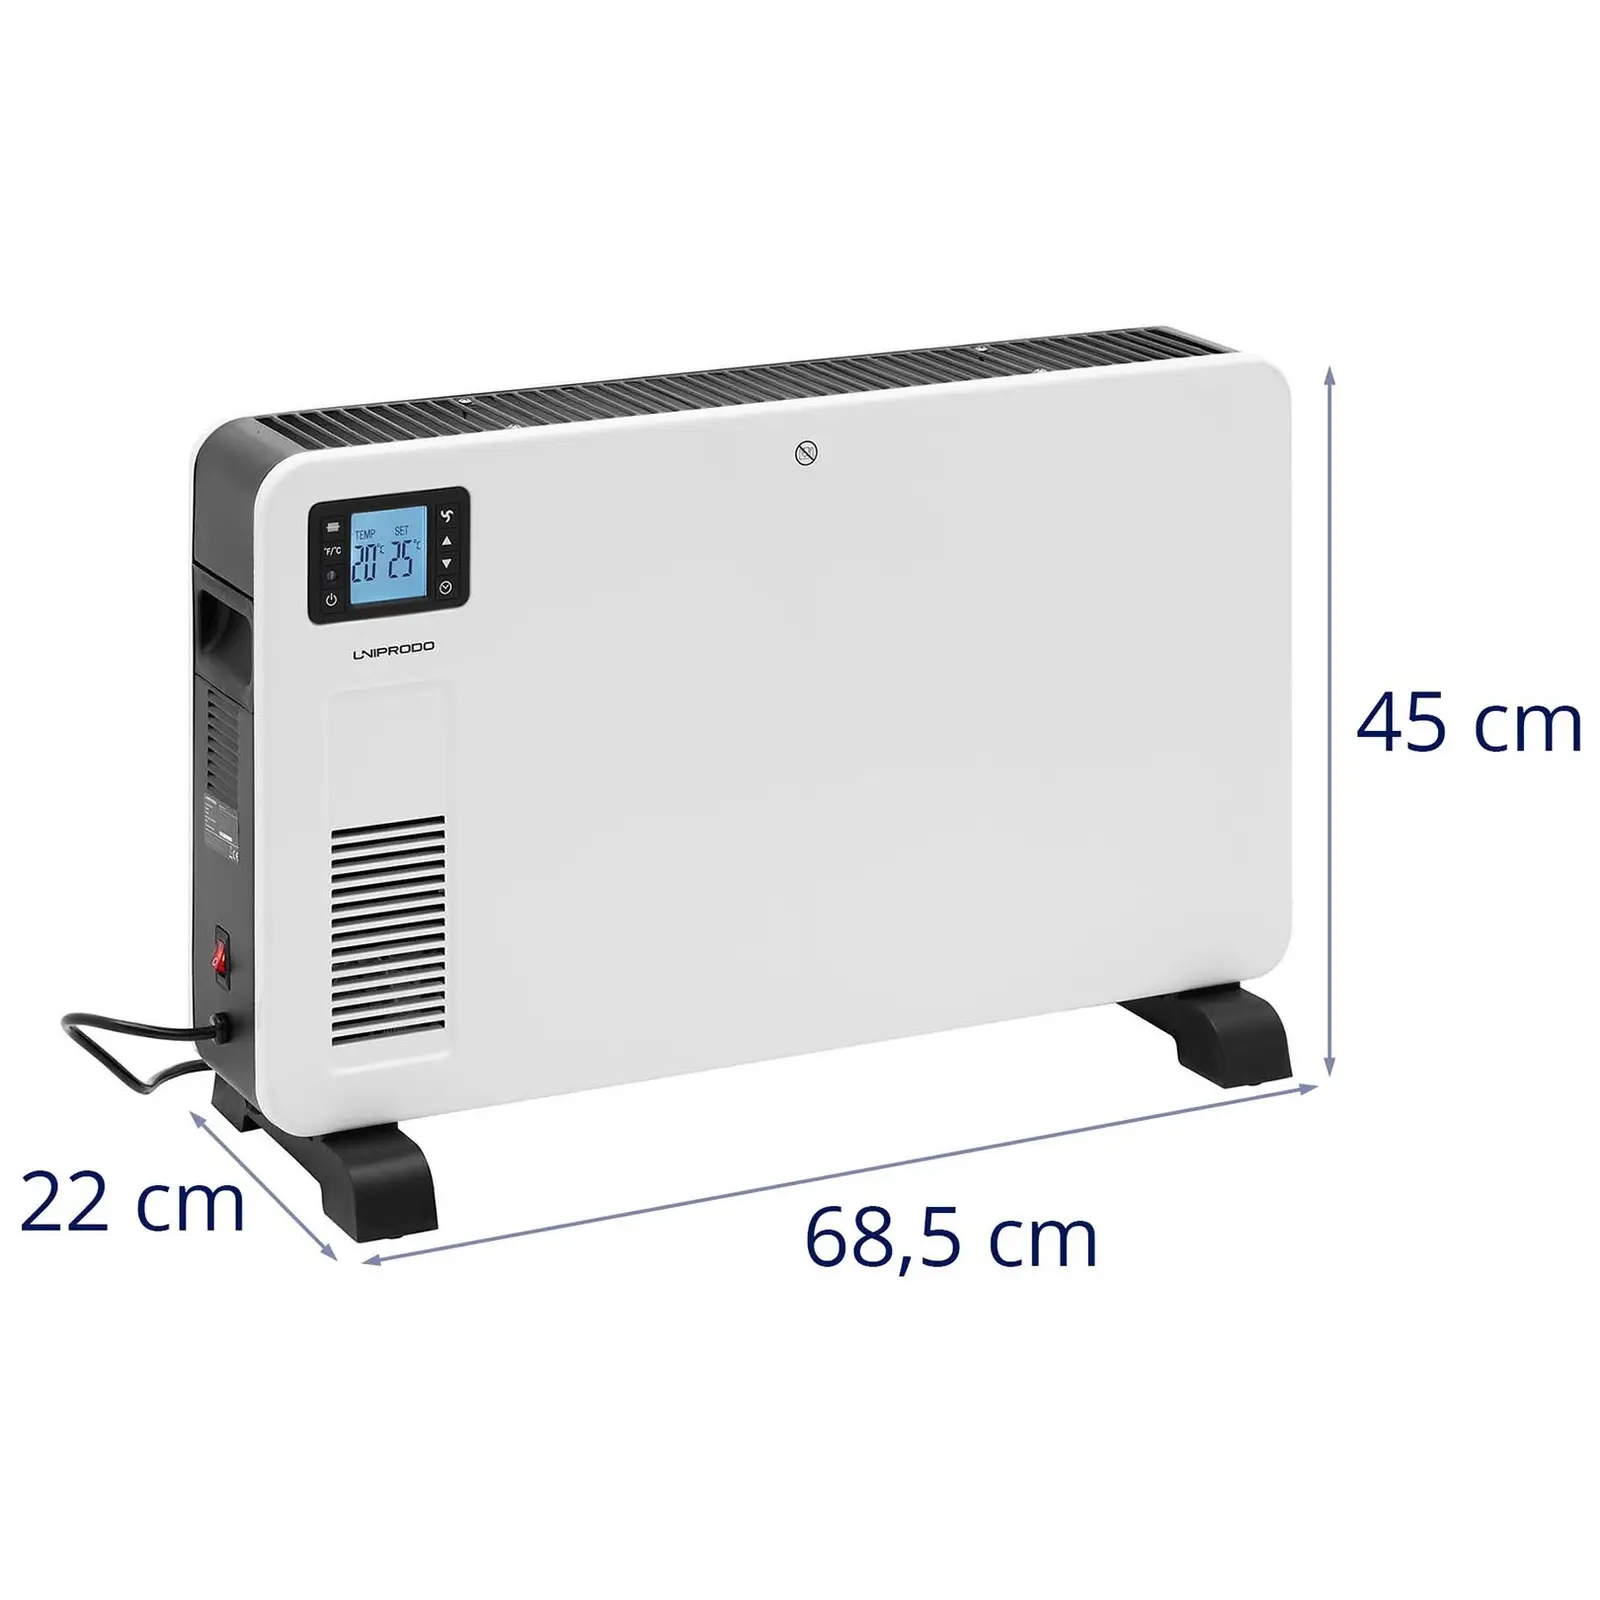 Convecteur électrique - pour 25 m² - 2300 W - Minuterie - LCD - Télécommande